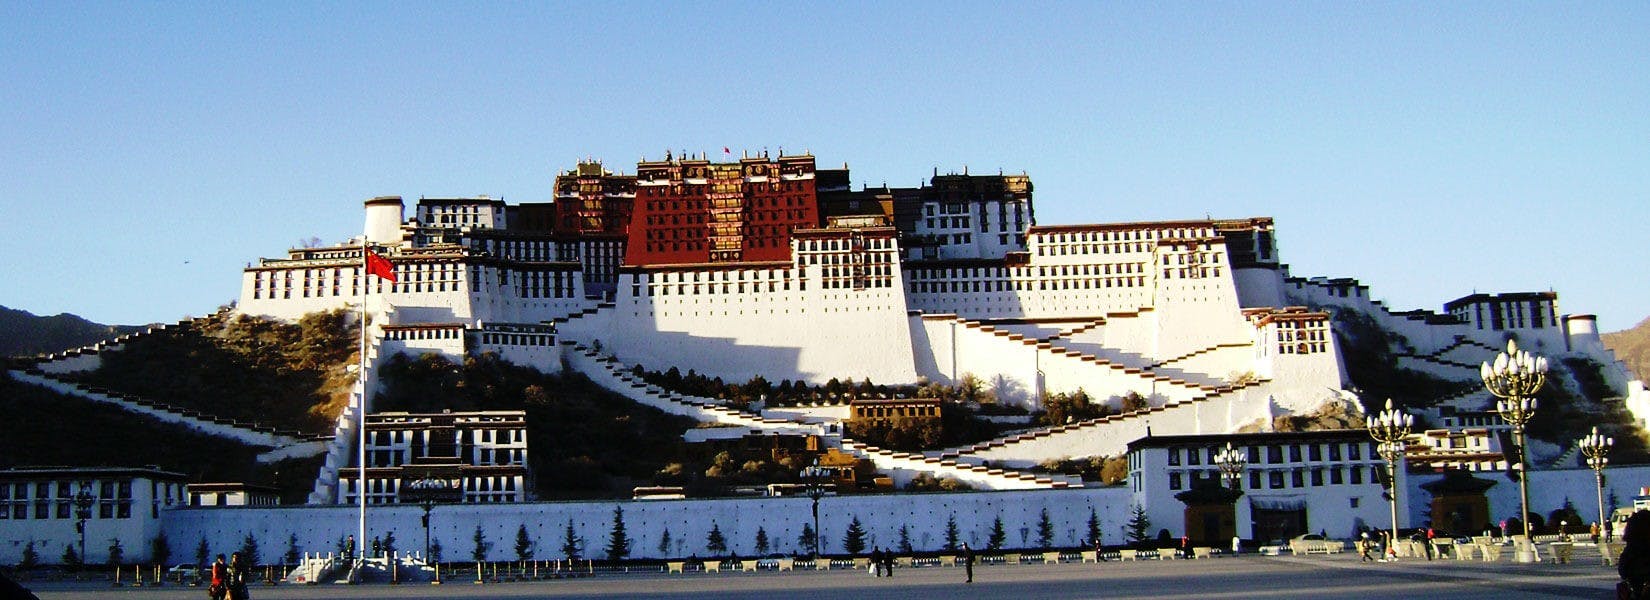 12 Days Tibet and Nepal Tour